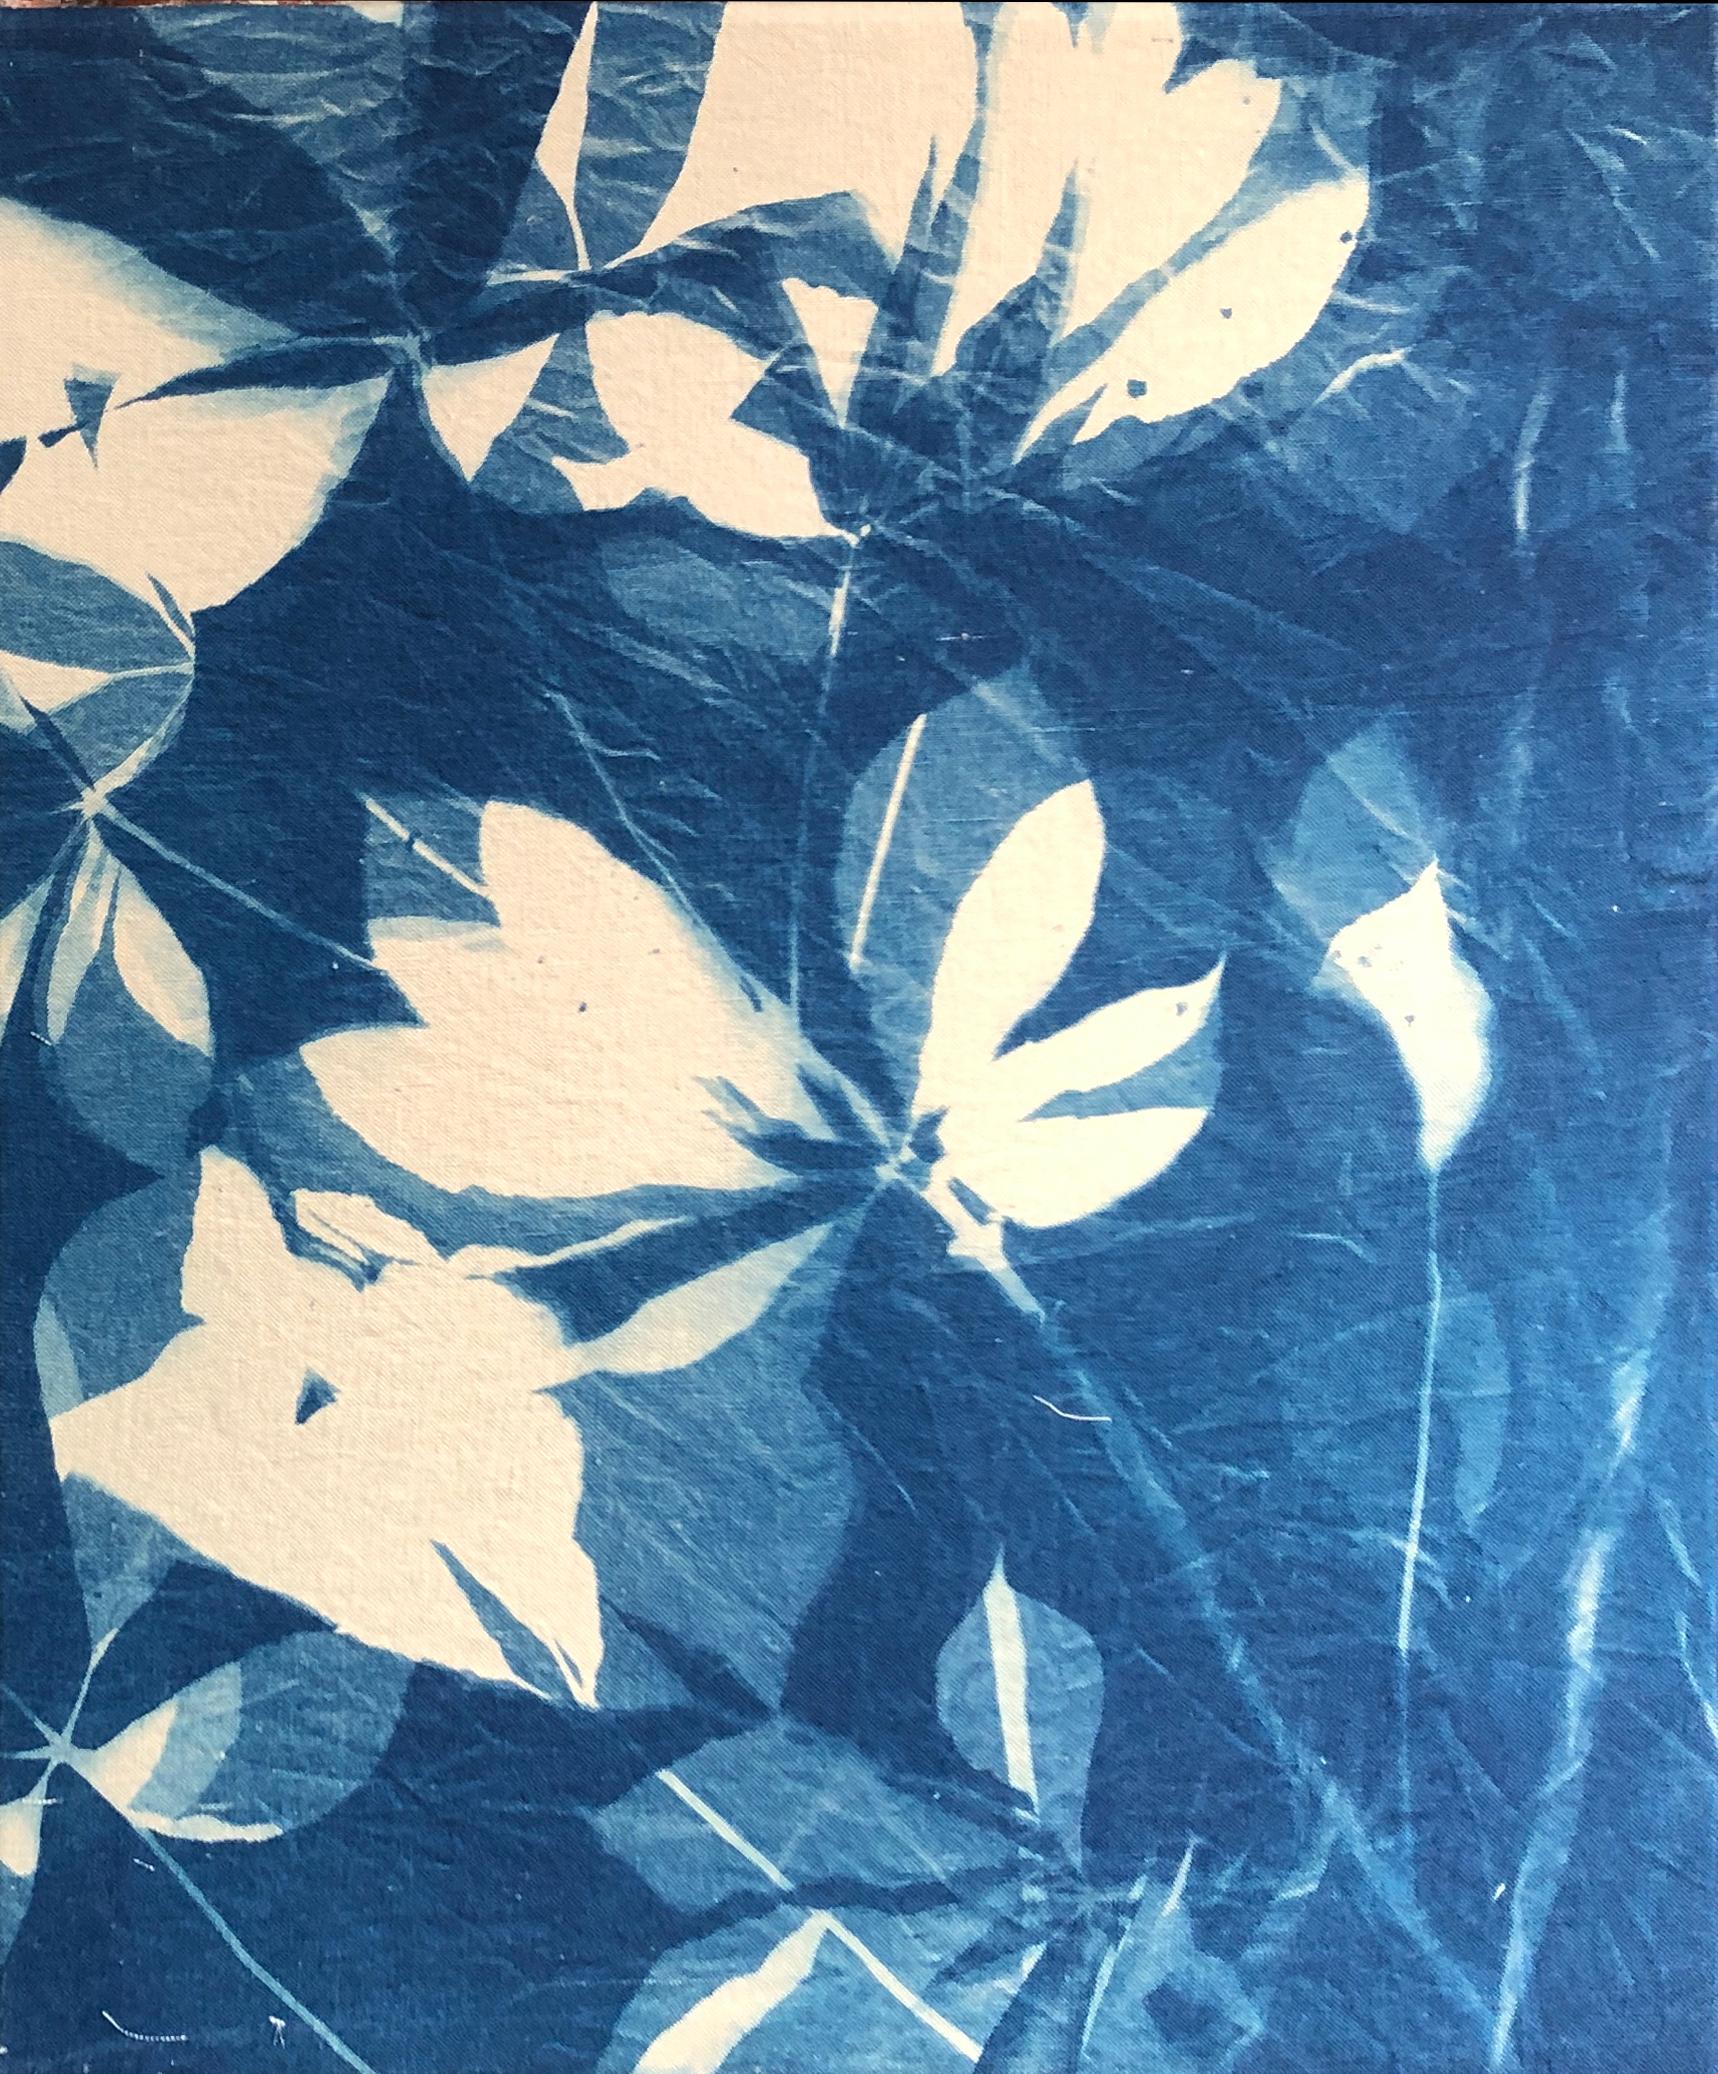 "Buckeye", zeitgenössisch, Baum, Blätter, blau, Cyanotypie, Fotografie